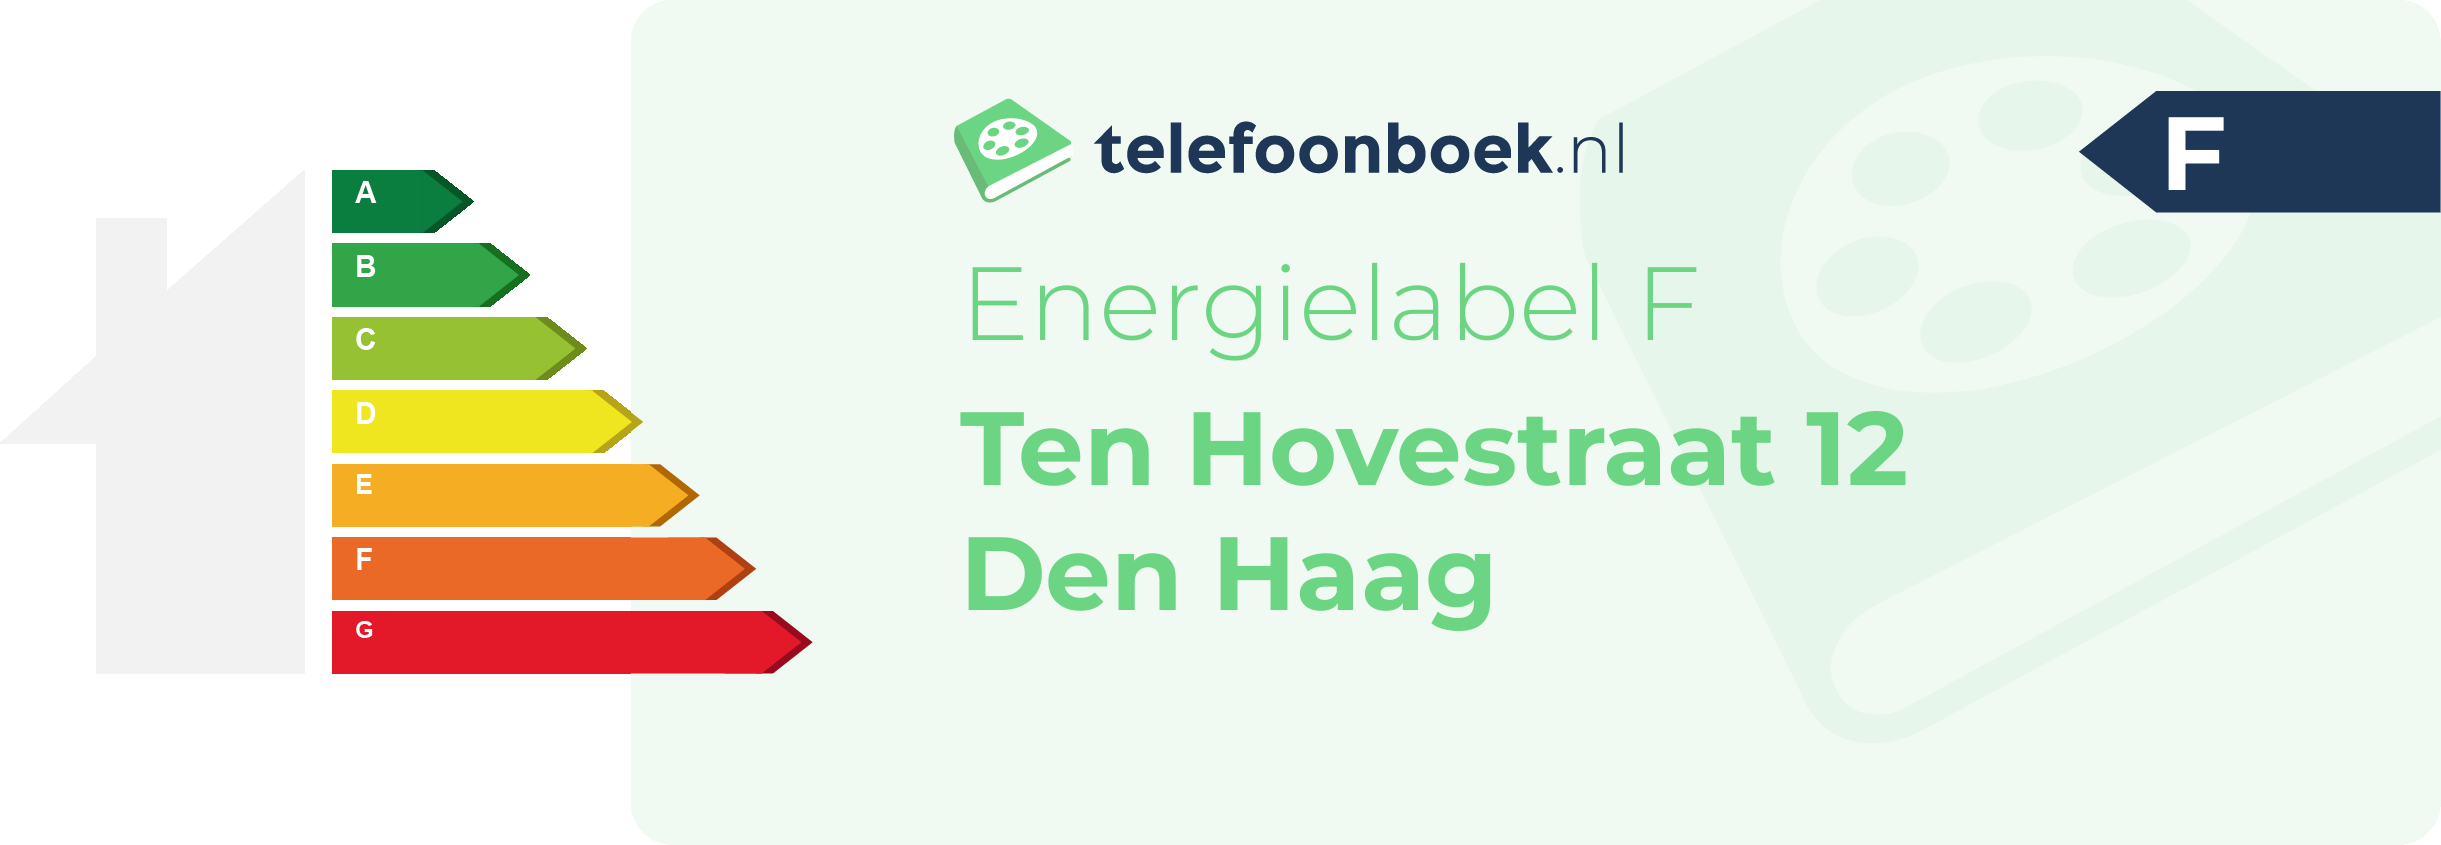 Energielabel Ten Hovestraat 12 Den Haag